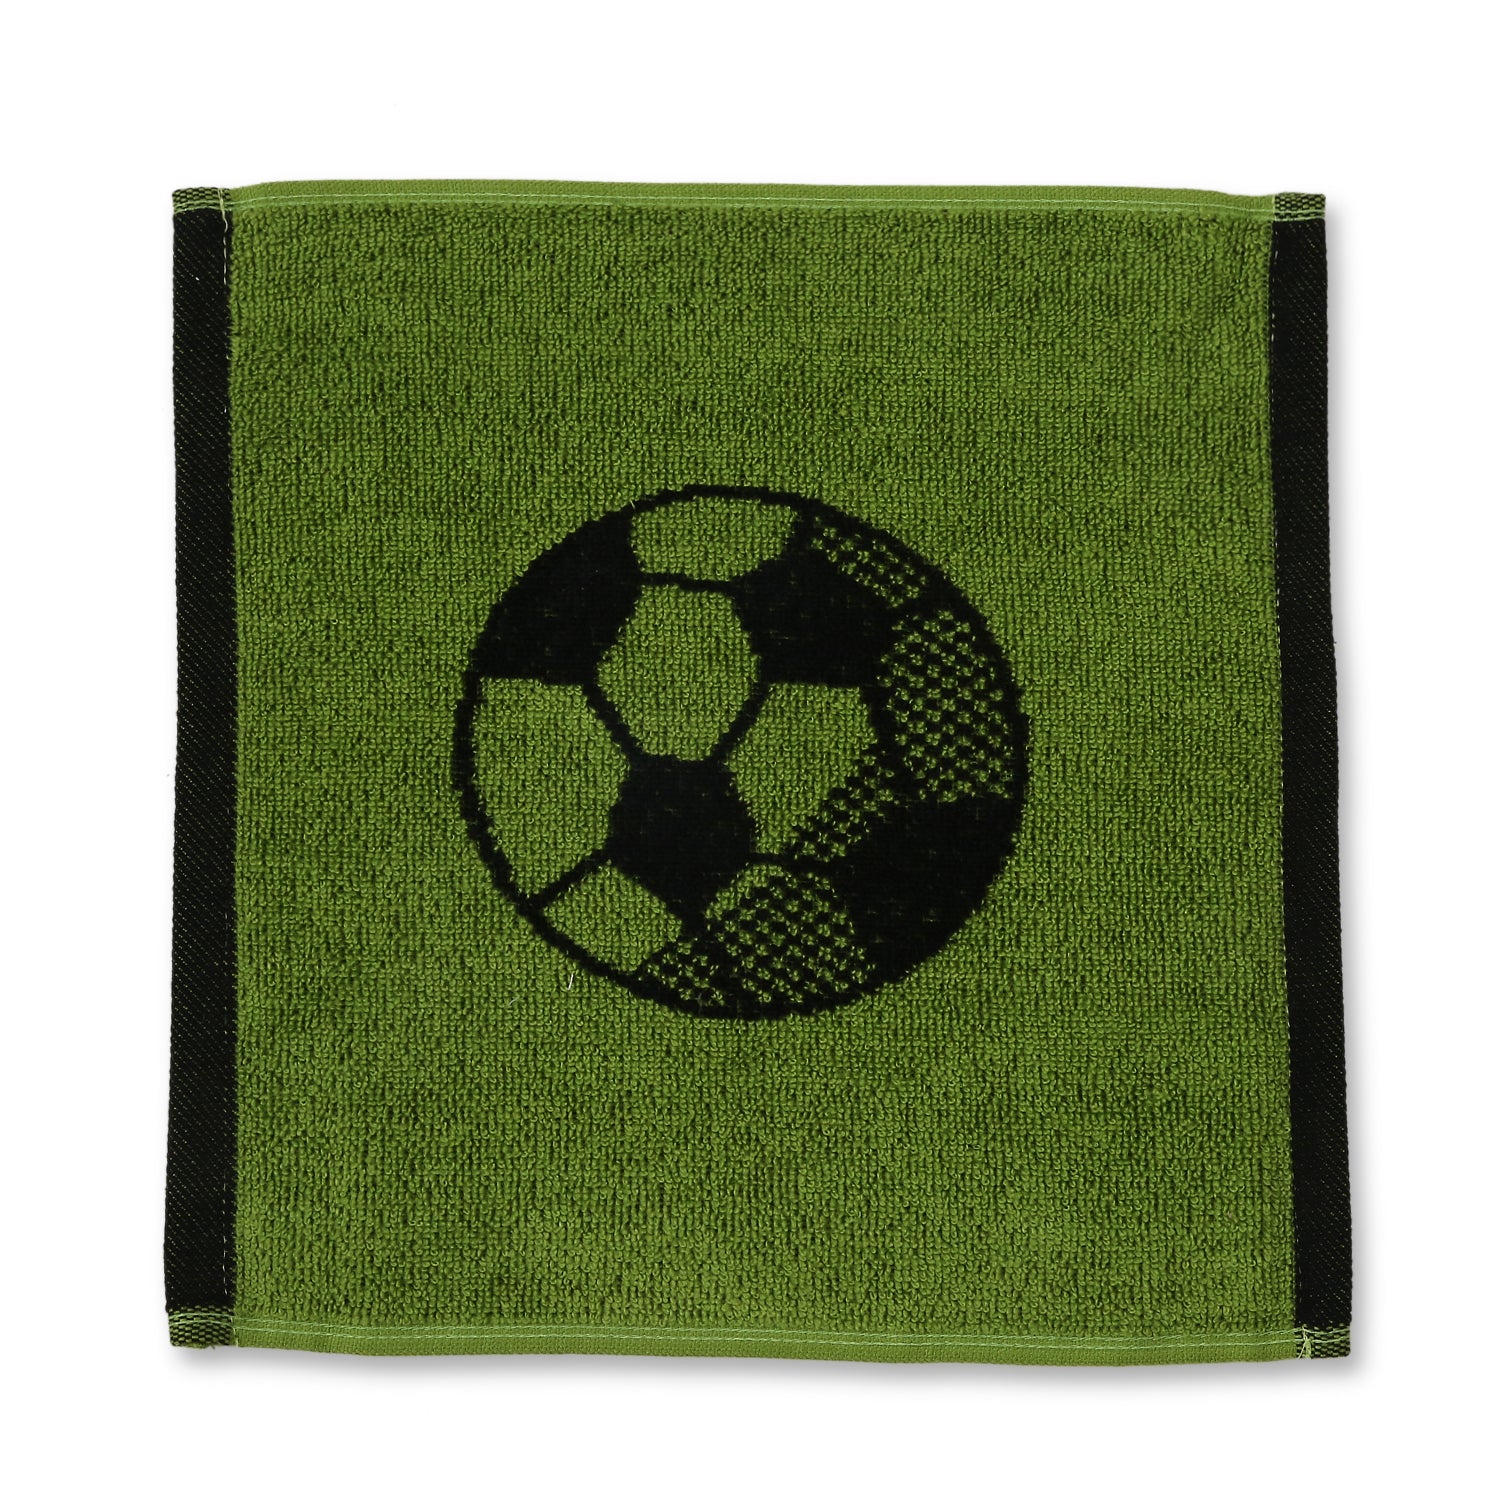 Green & Black Football Wash Towel